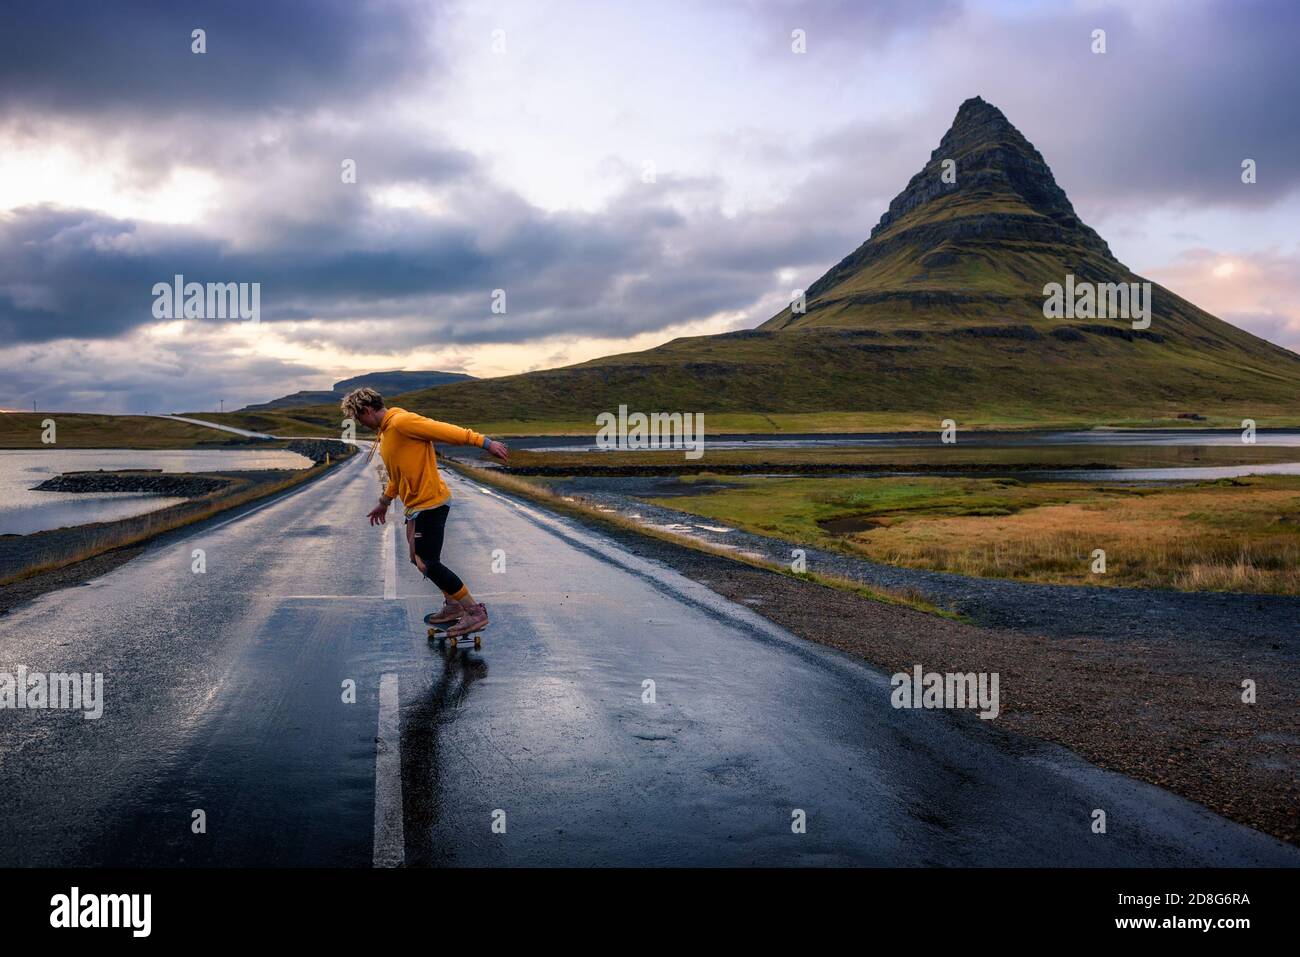 Disparo de acción de un patinador en un camino mojado alrededor monte Kirkjufell en Islandia Foto de stock